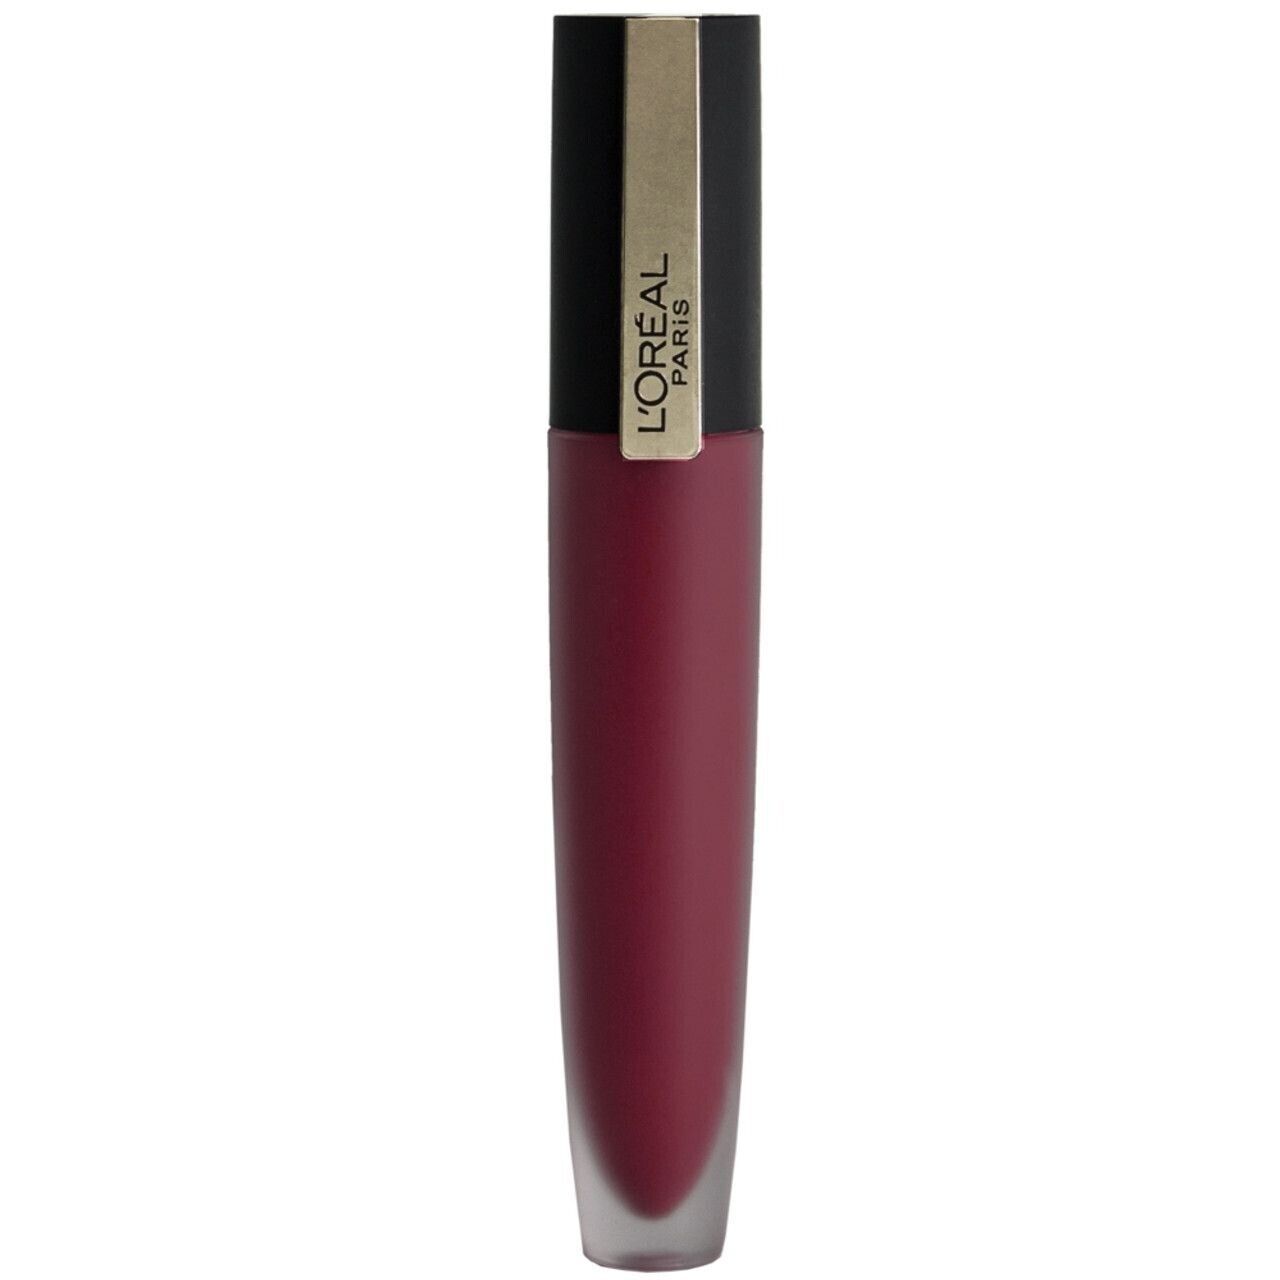 L'Oreal Paris Rouge Signature Matte Lip Stain, #410, I Enjoy, 0.23 Fl Oz - $4.45